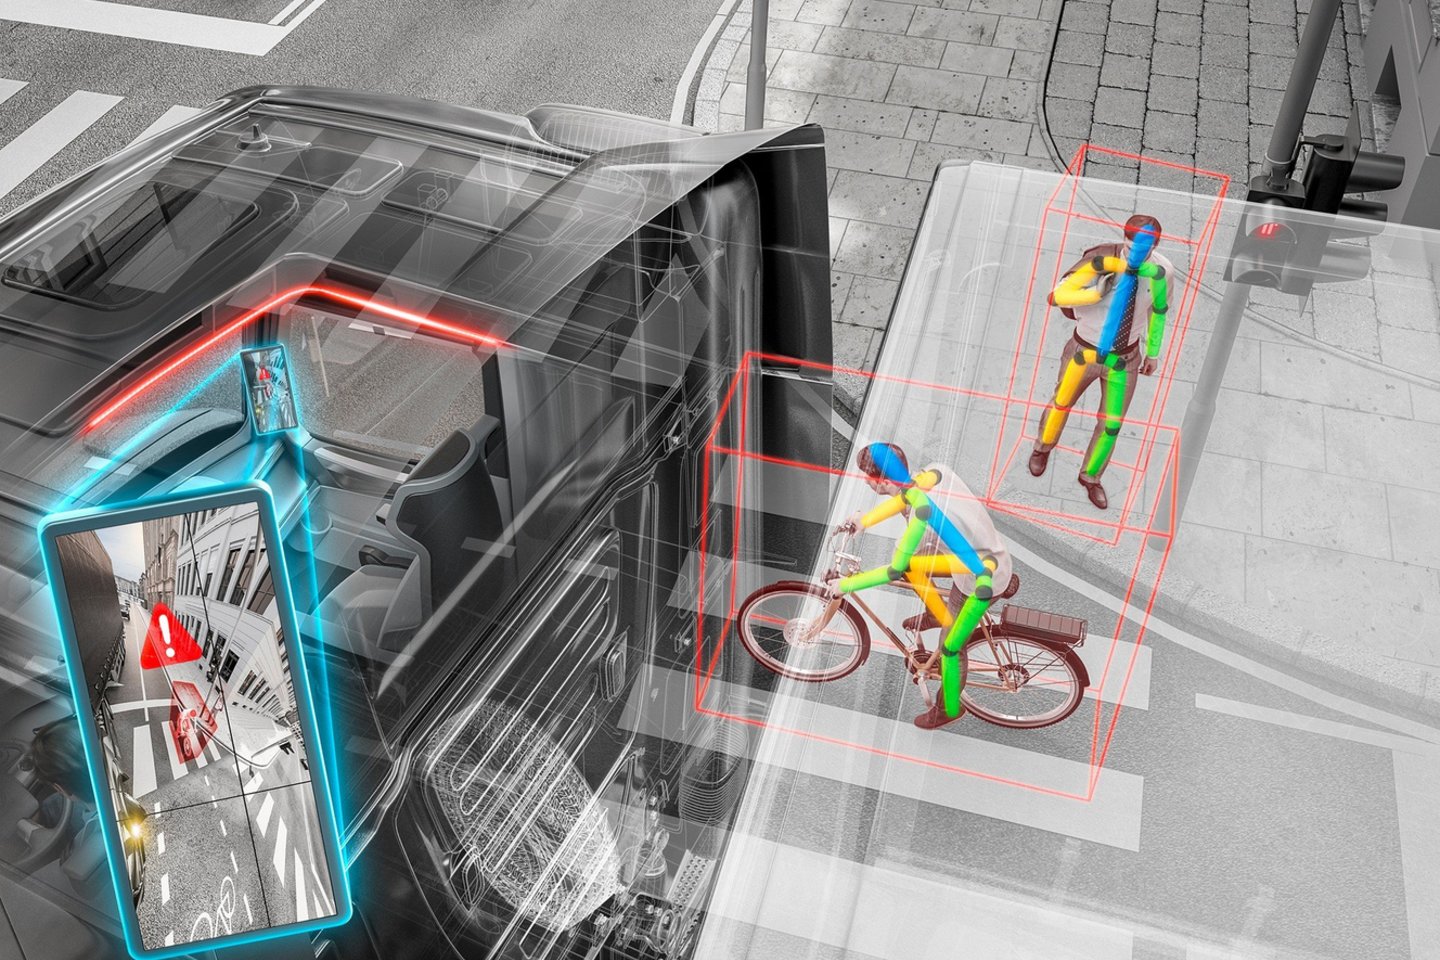  Saugumo sistema su dirbtiniu intelektu atpažins galimus pėsčiųjų ir dviratininkų veiksmus.<br> Gamintojo nuotr.